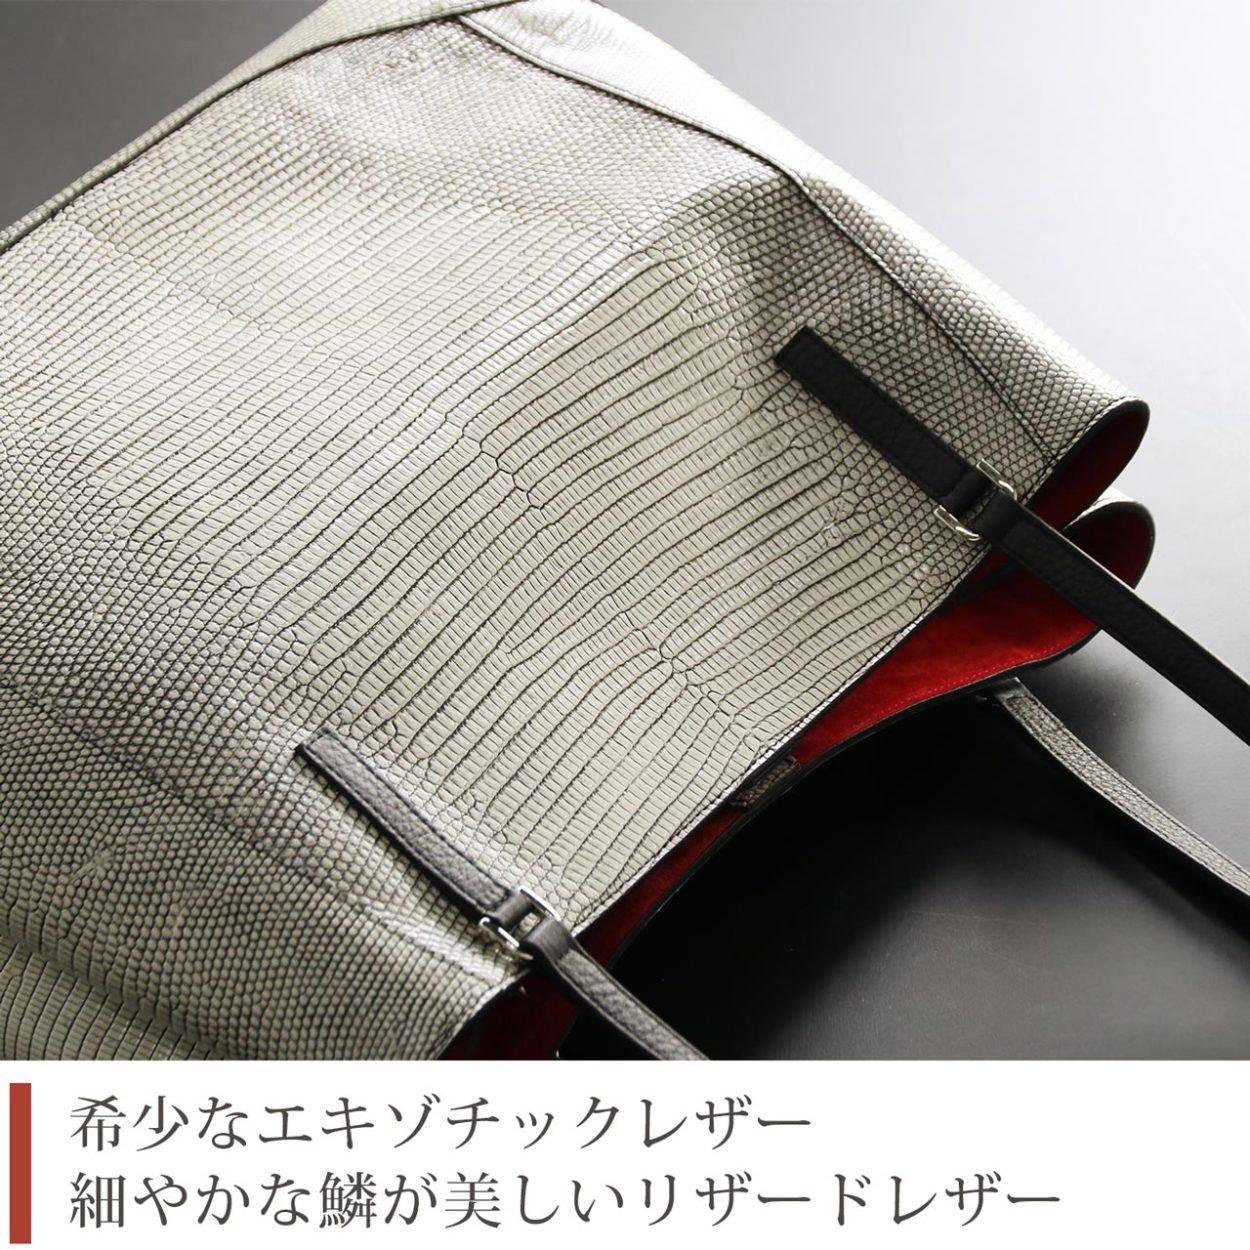 リザード 本革 トートバッグ メンズ 日本製 JRA バニラ アイボリー